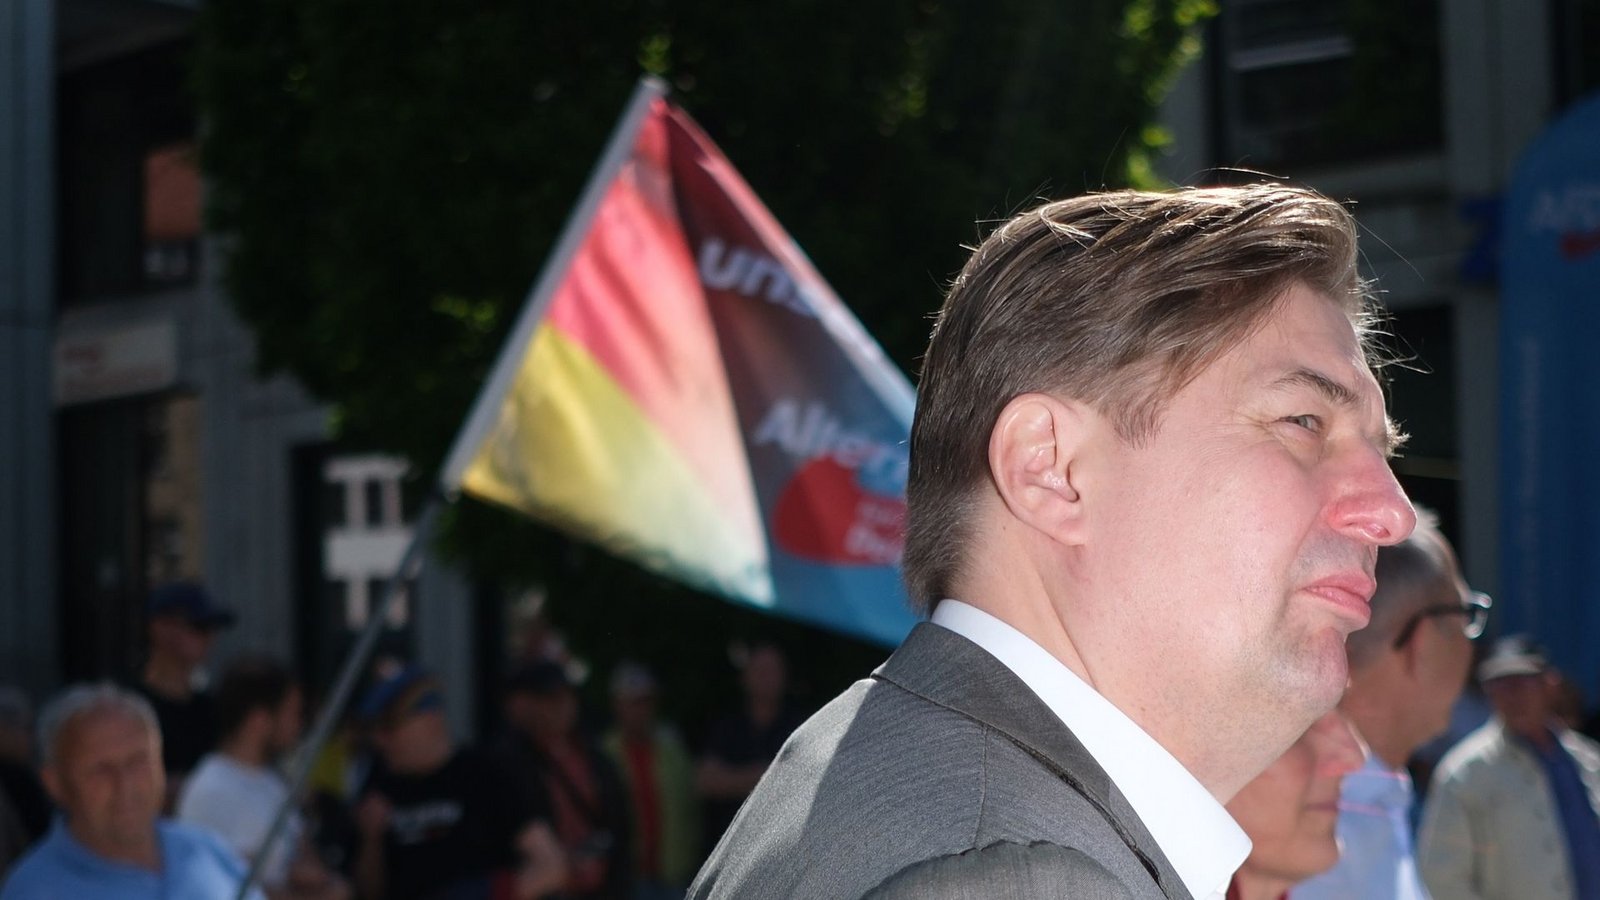 Maximilian Krah ist erstmals nach Bekanntwerden des Spionagefalls bei seinem Mitarbeiter wieder öffentlich aufgetreten. Hier bei einer AfD-Kundgebung in Chemnitz.Foto: Sebastian Willnow/dpa